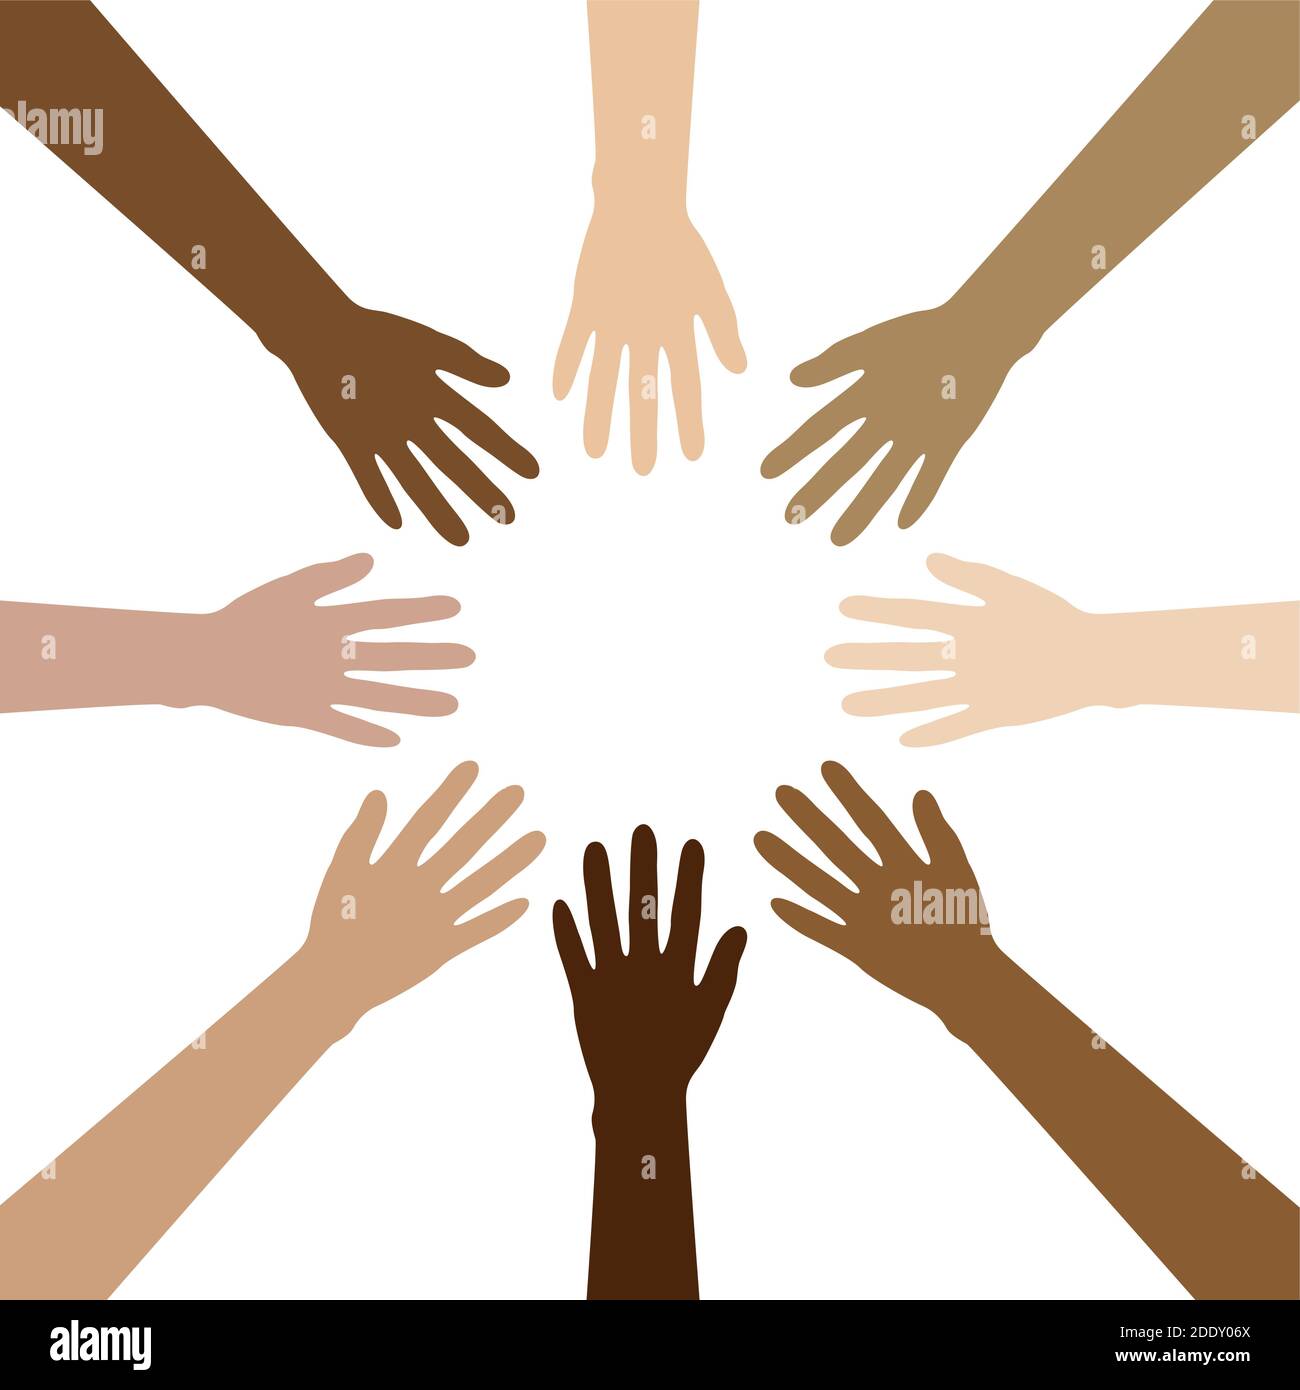 Gruppe von menschlichen Händen mit verschiedenen Hautfarben bauen ein Kreis isoliert auf weißem Vektor Illustration EPS10 Stock Vektor